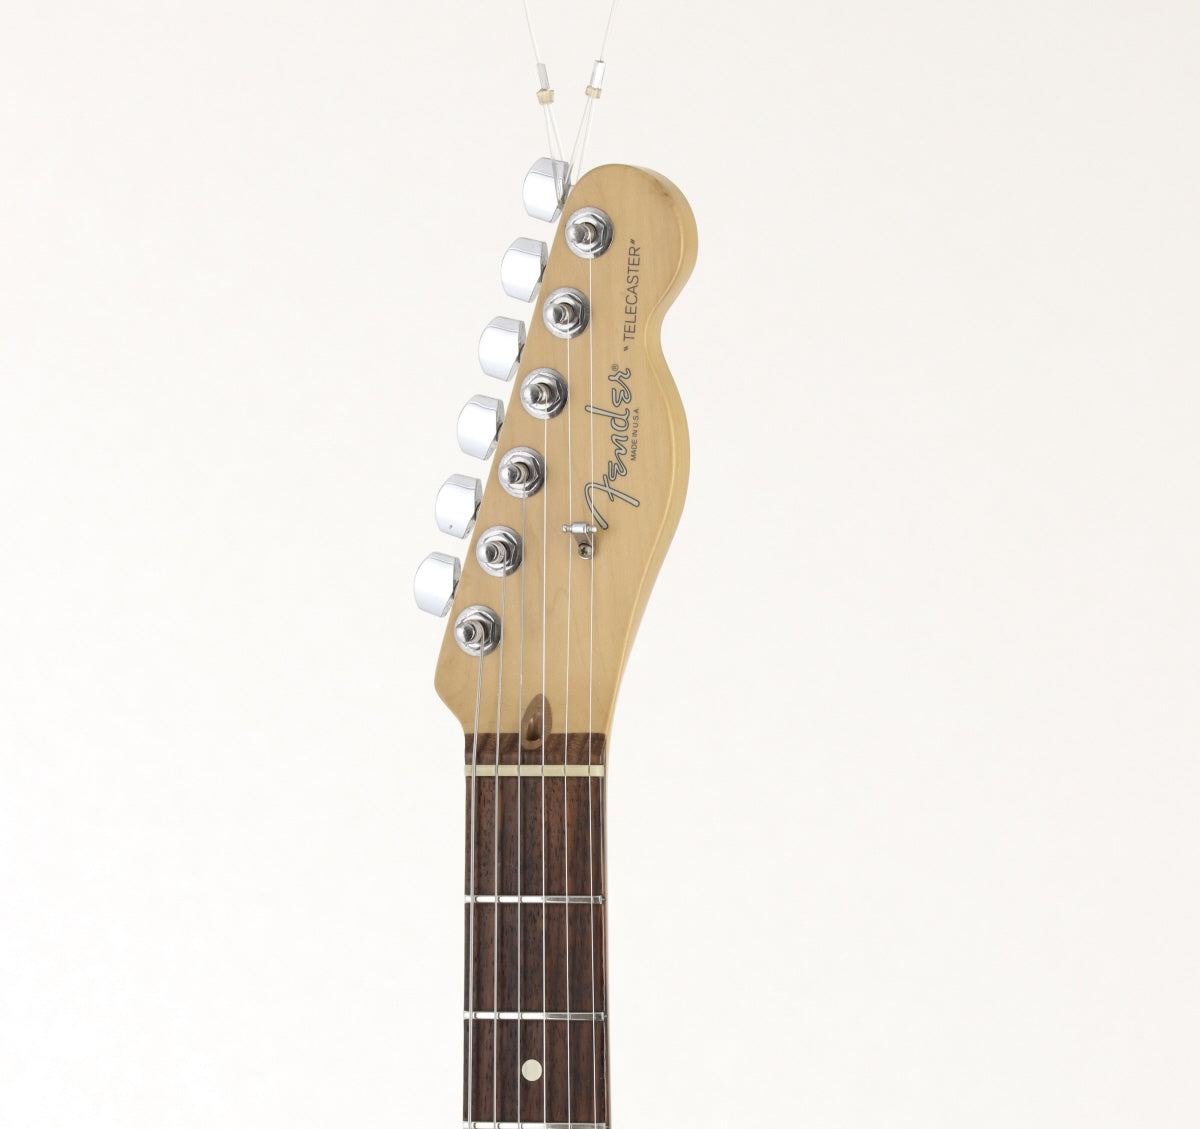 [SN Z4022216] USED Fender / Highway 1 Telecaster 3-Color Sunburst Rosewood Fingerboard 2004 [09]